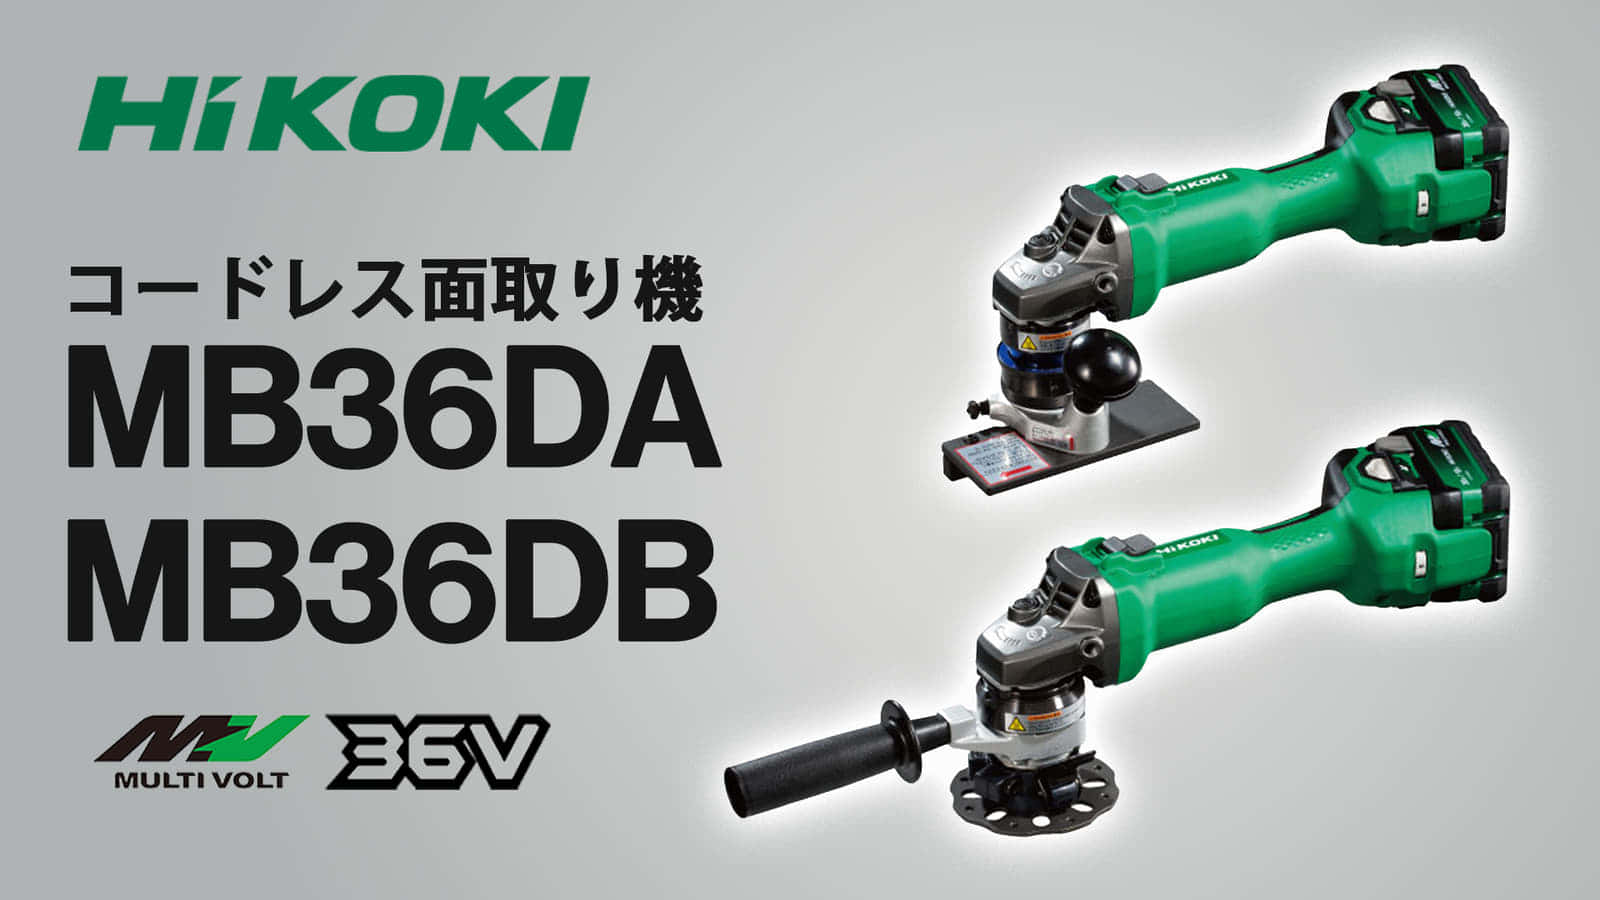 HiKOKI MB36DA/MB36DB コードレス面取り機を発売、さっと使えるコードレスモデル